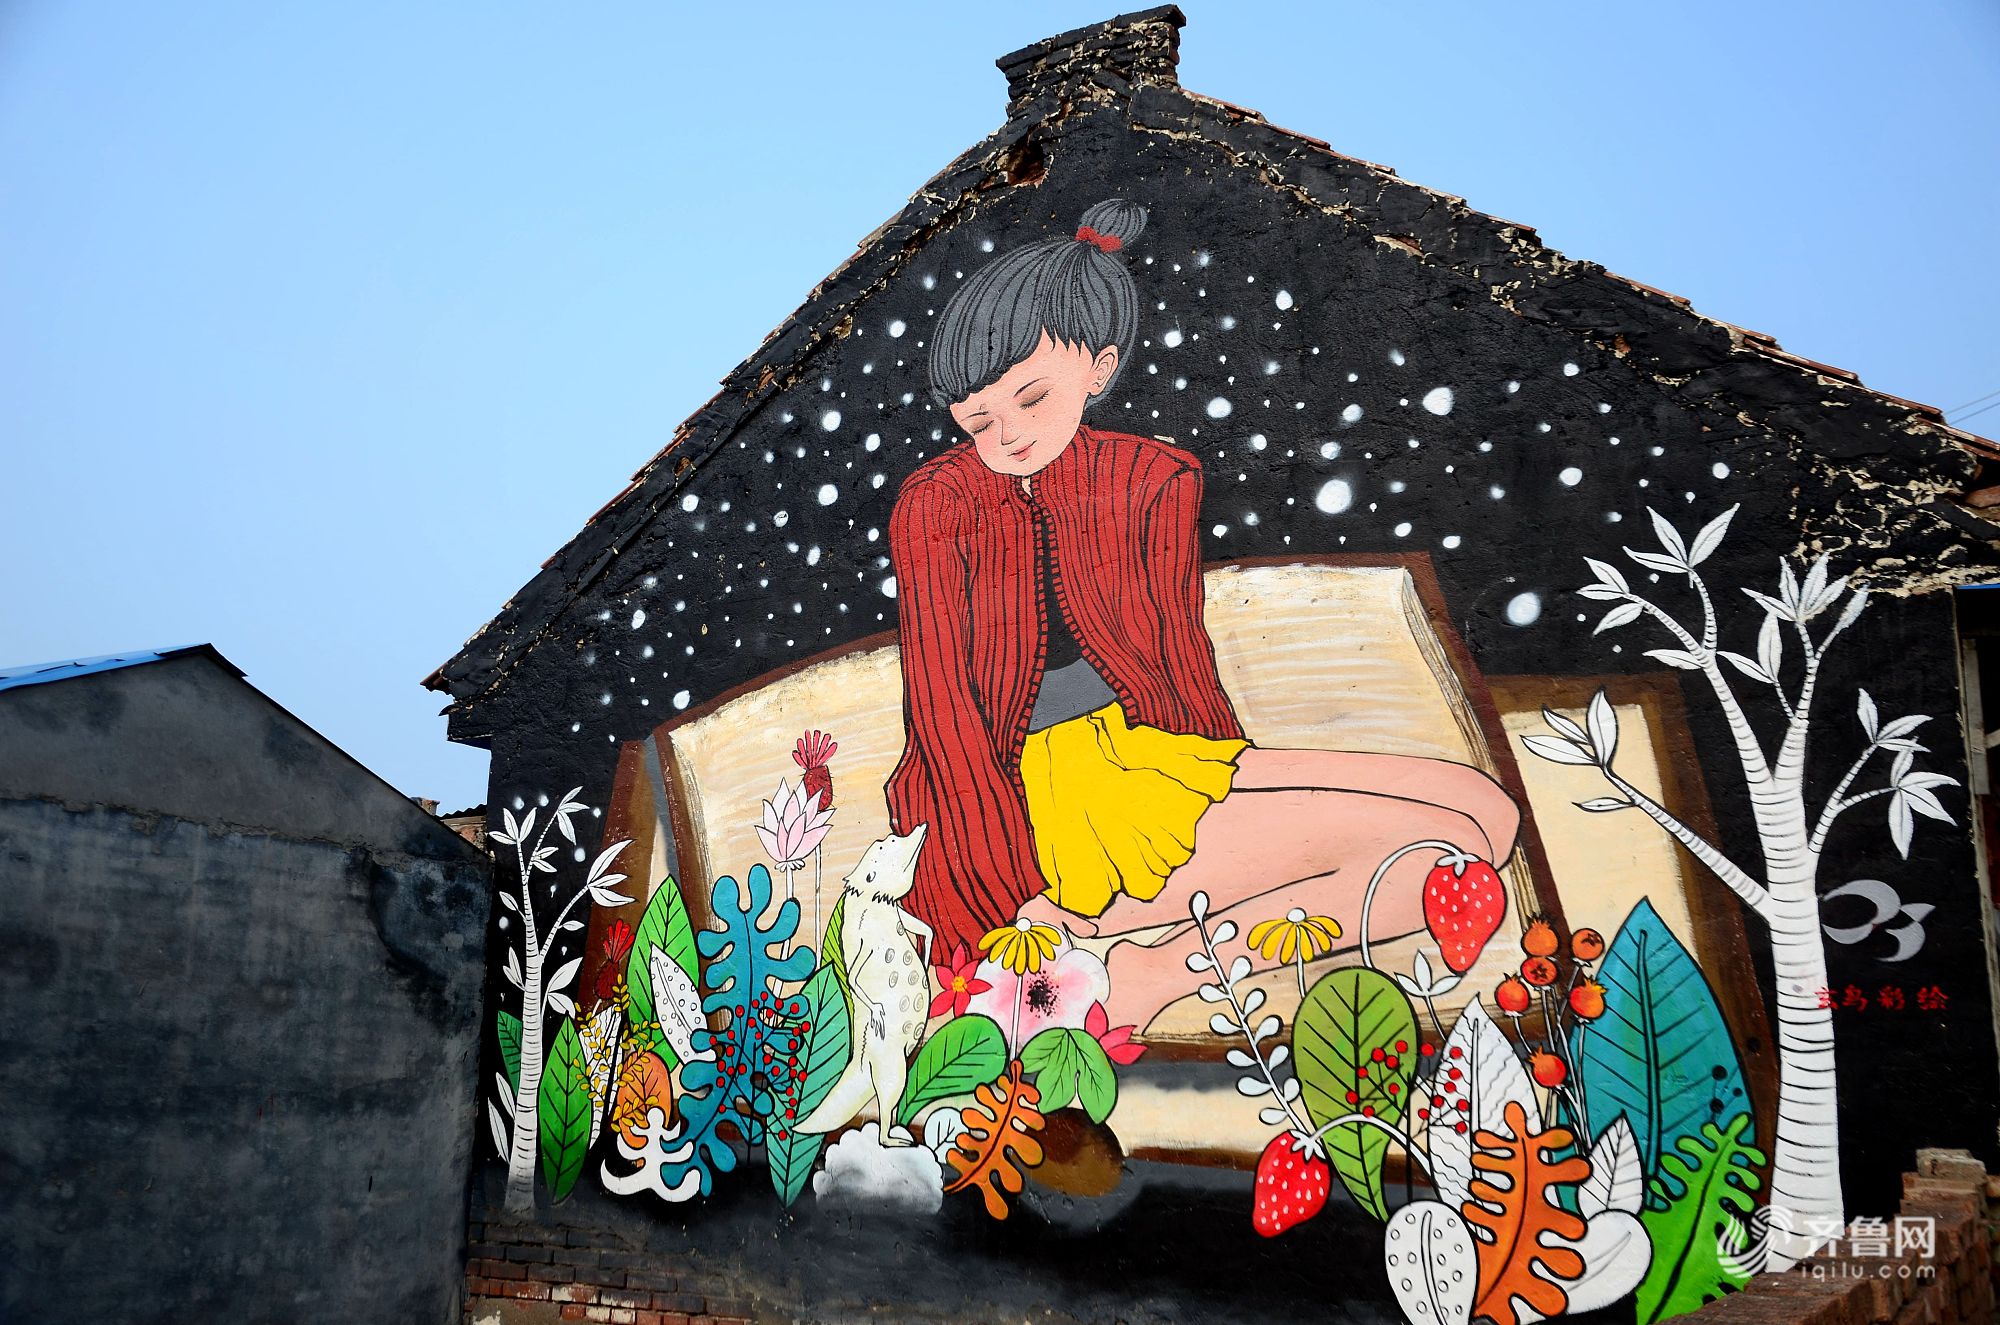 潍坊现涂鸦村 100多名艺术家耗时一月用艺术改变乡村_央广网